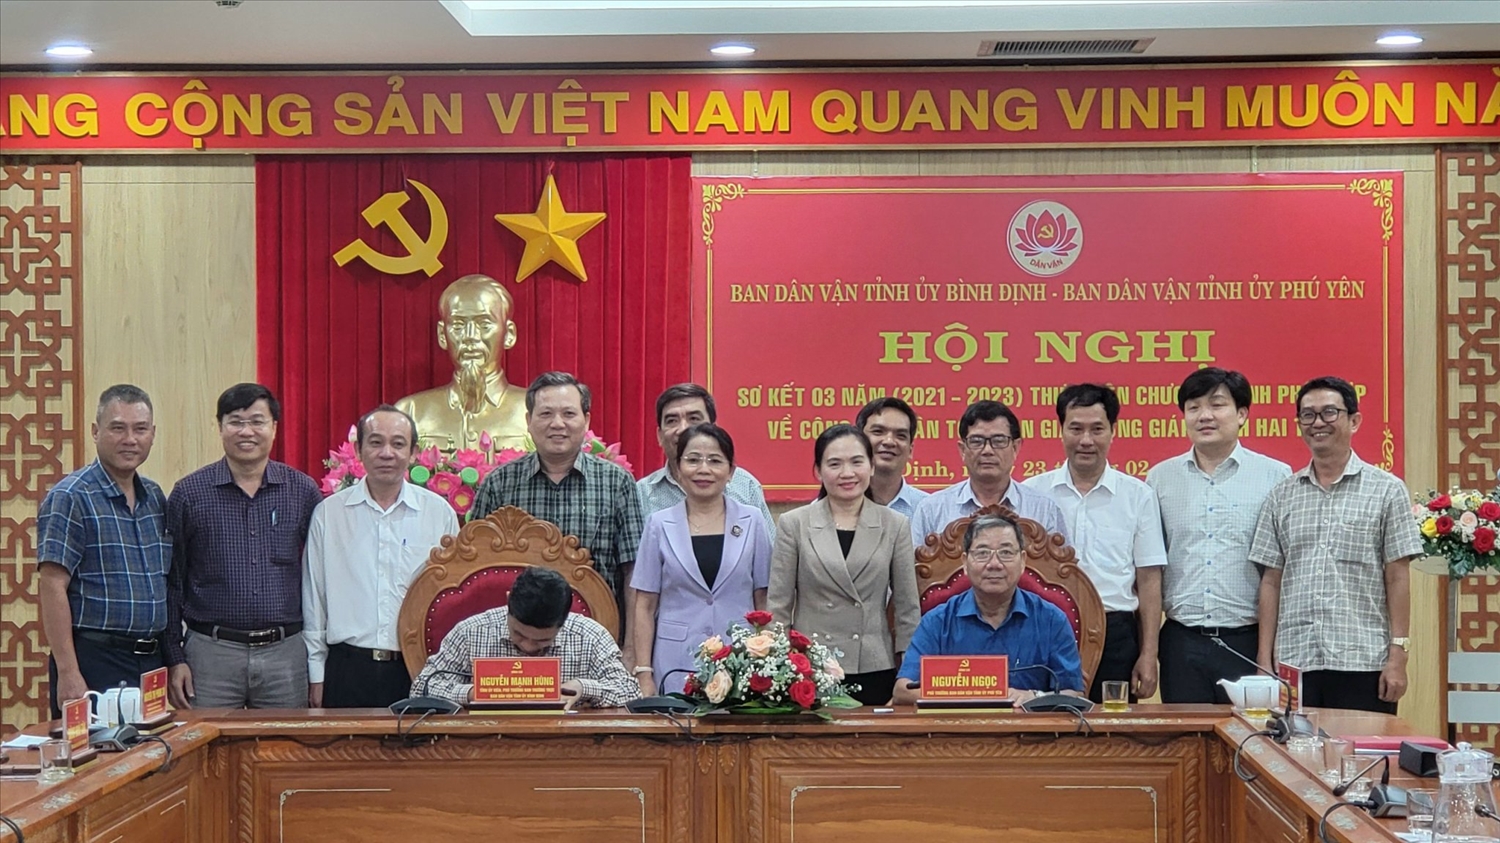 Ban Dân vận Tỉnh ủy Bình Định và Phú Yên đã ký kết chương trình phối hợp công tác năm 2024